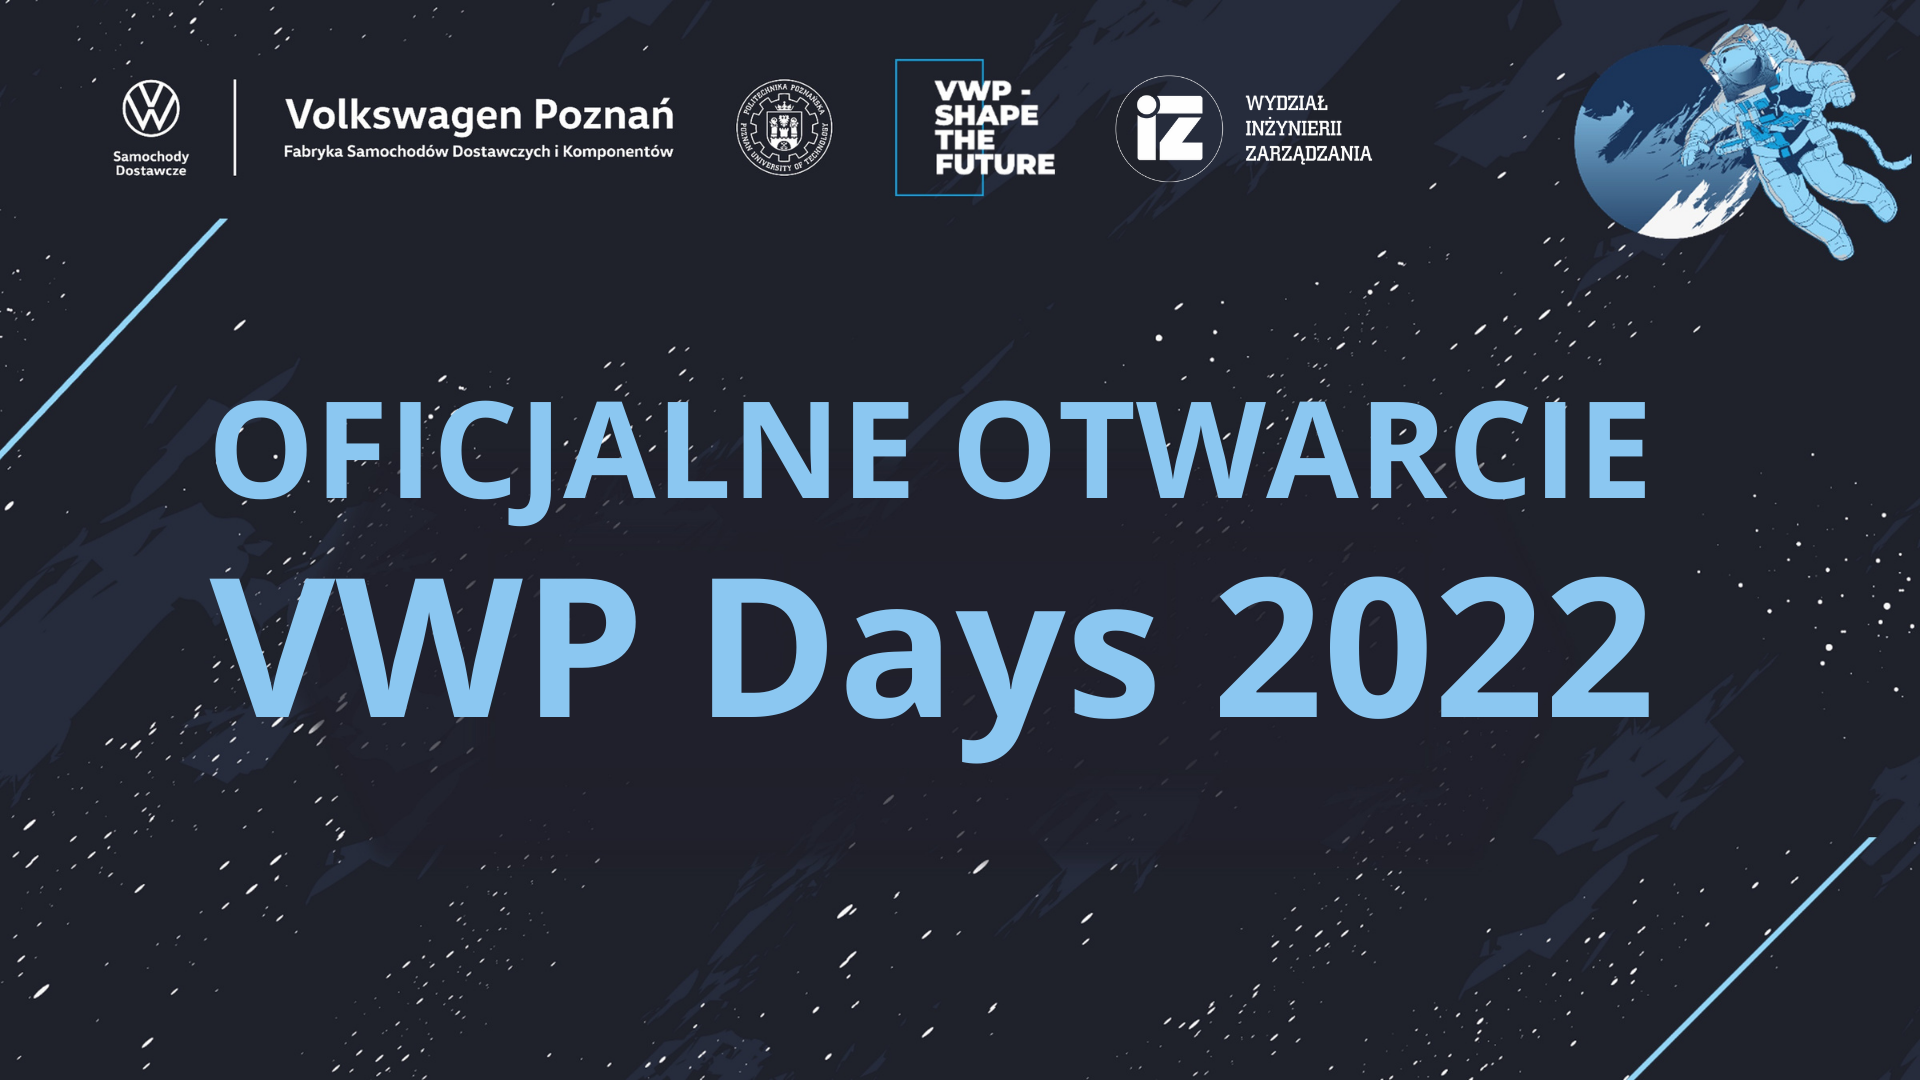 VWP Days - plakat informujący o otwarciu wydarzenia